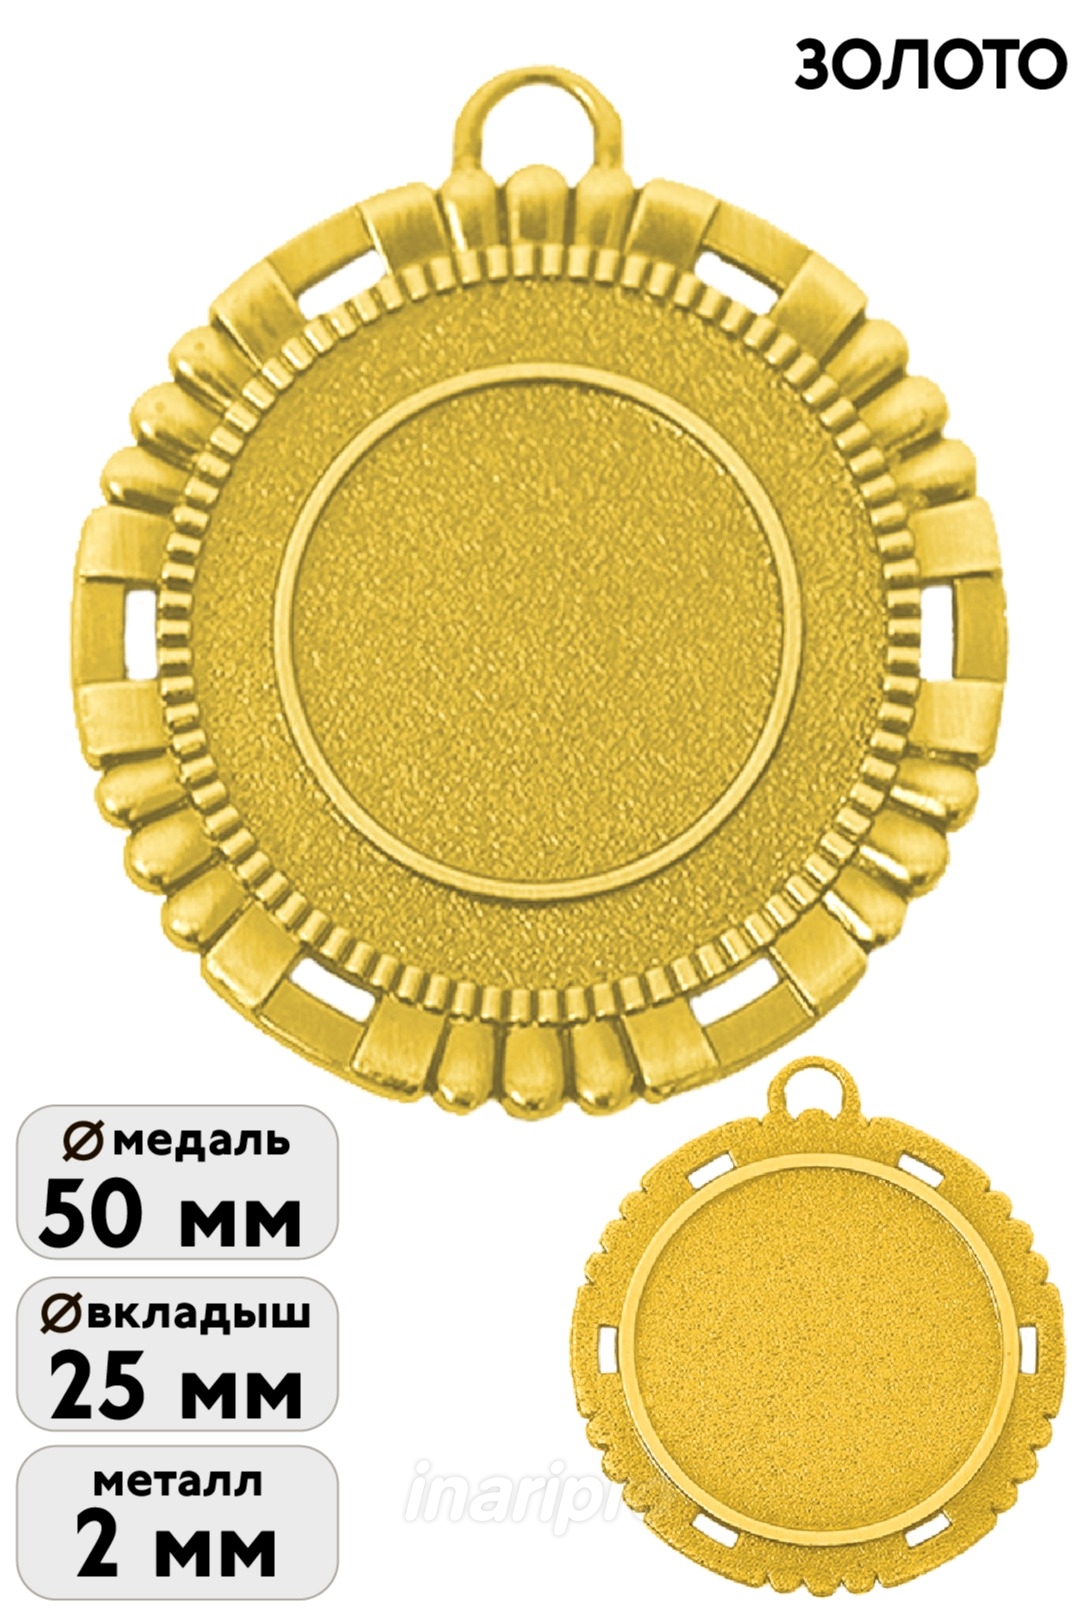 1МДЛ-097 Медаль металлическая на ленте 